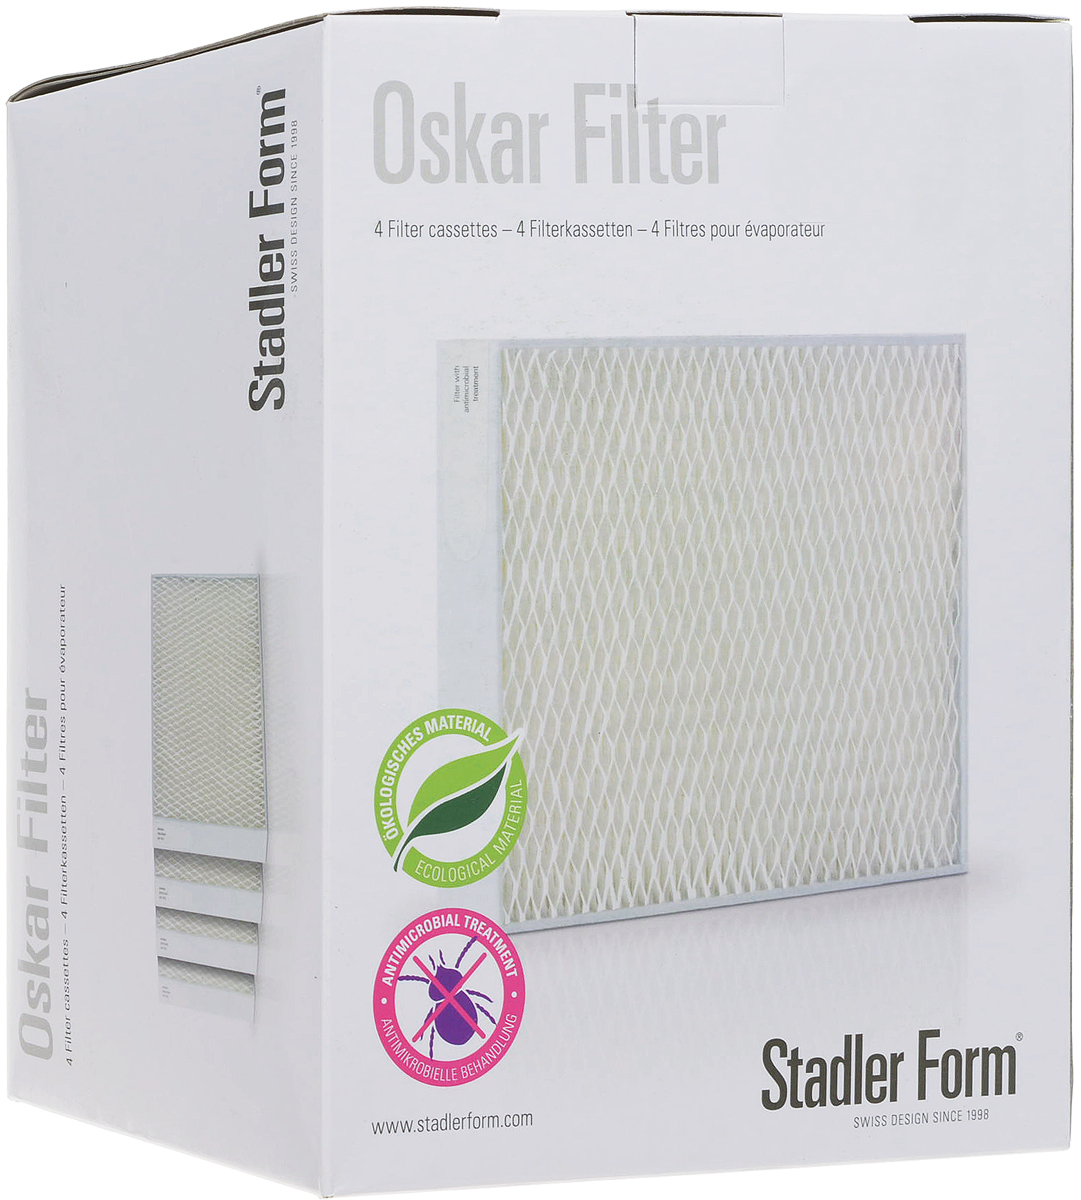 Stadler Form O-050 фильтры для увлажнителя воздуха Oskar Big, 4 шт